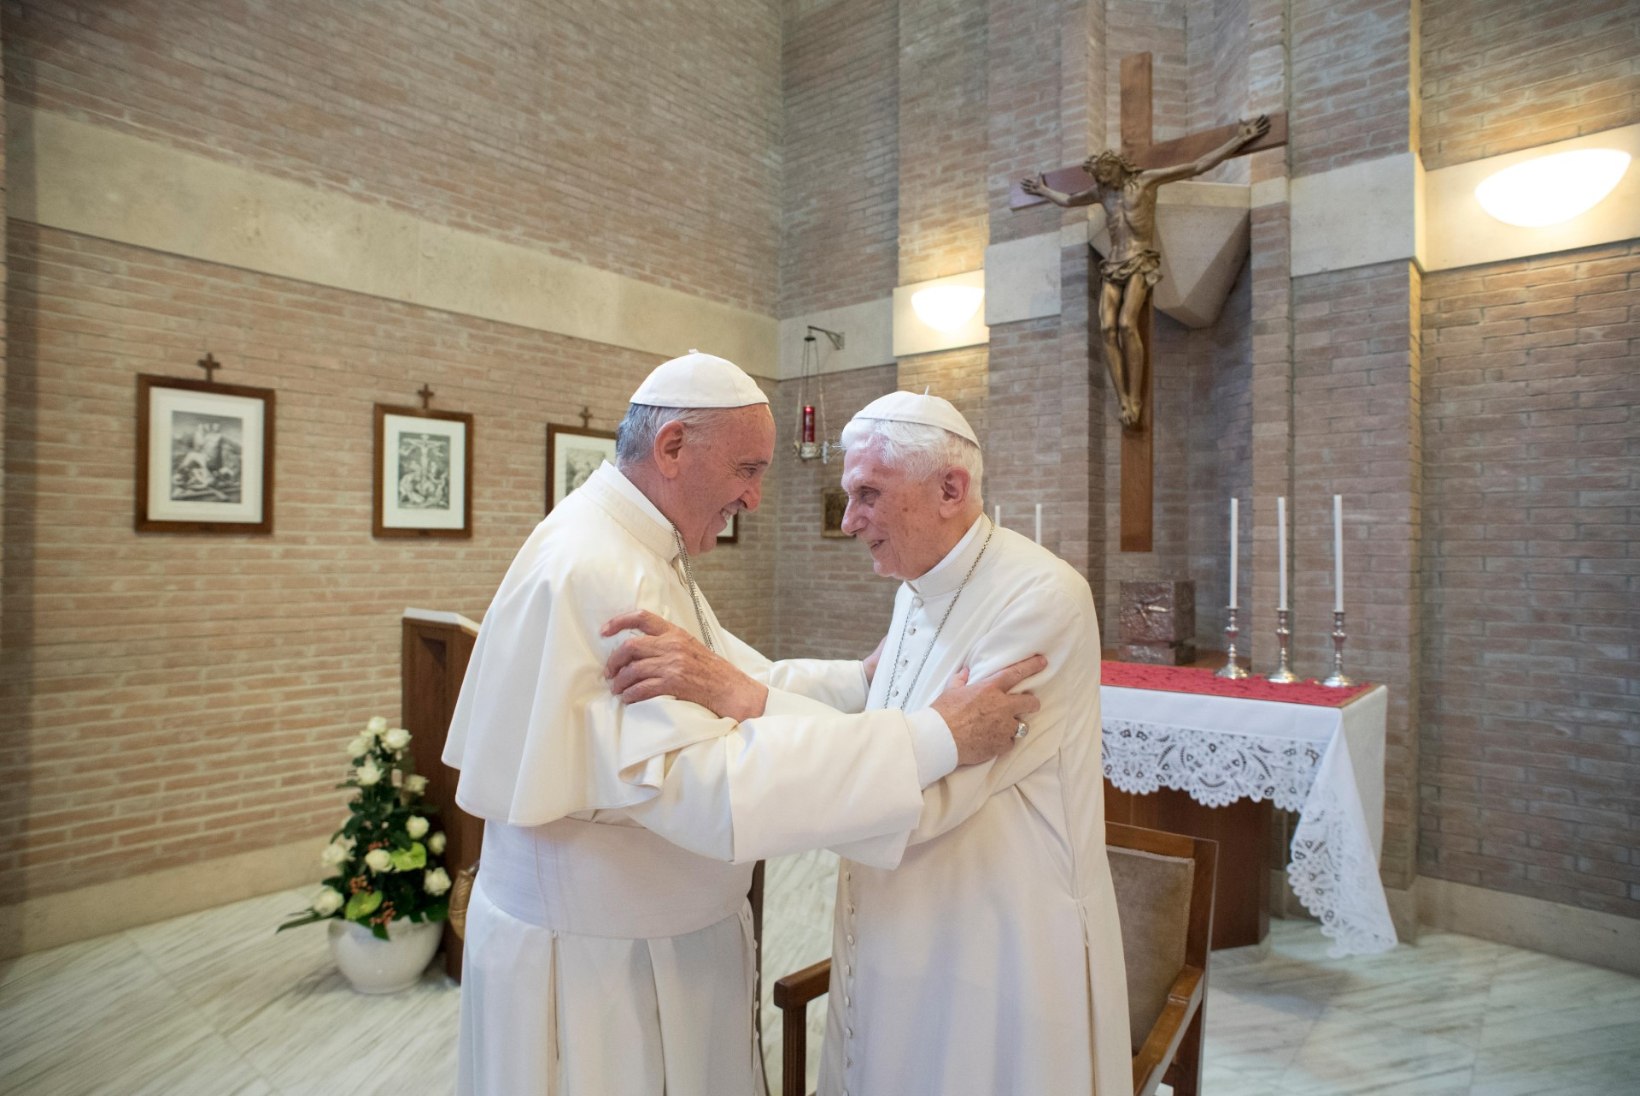 PÄEVA KASUTU FAKT | Paavst ei tohi reliikviahirmu tõttu olla organidoonor